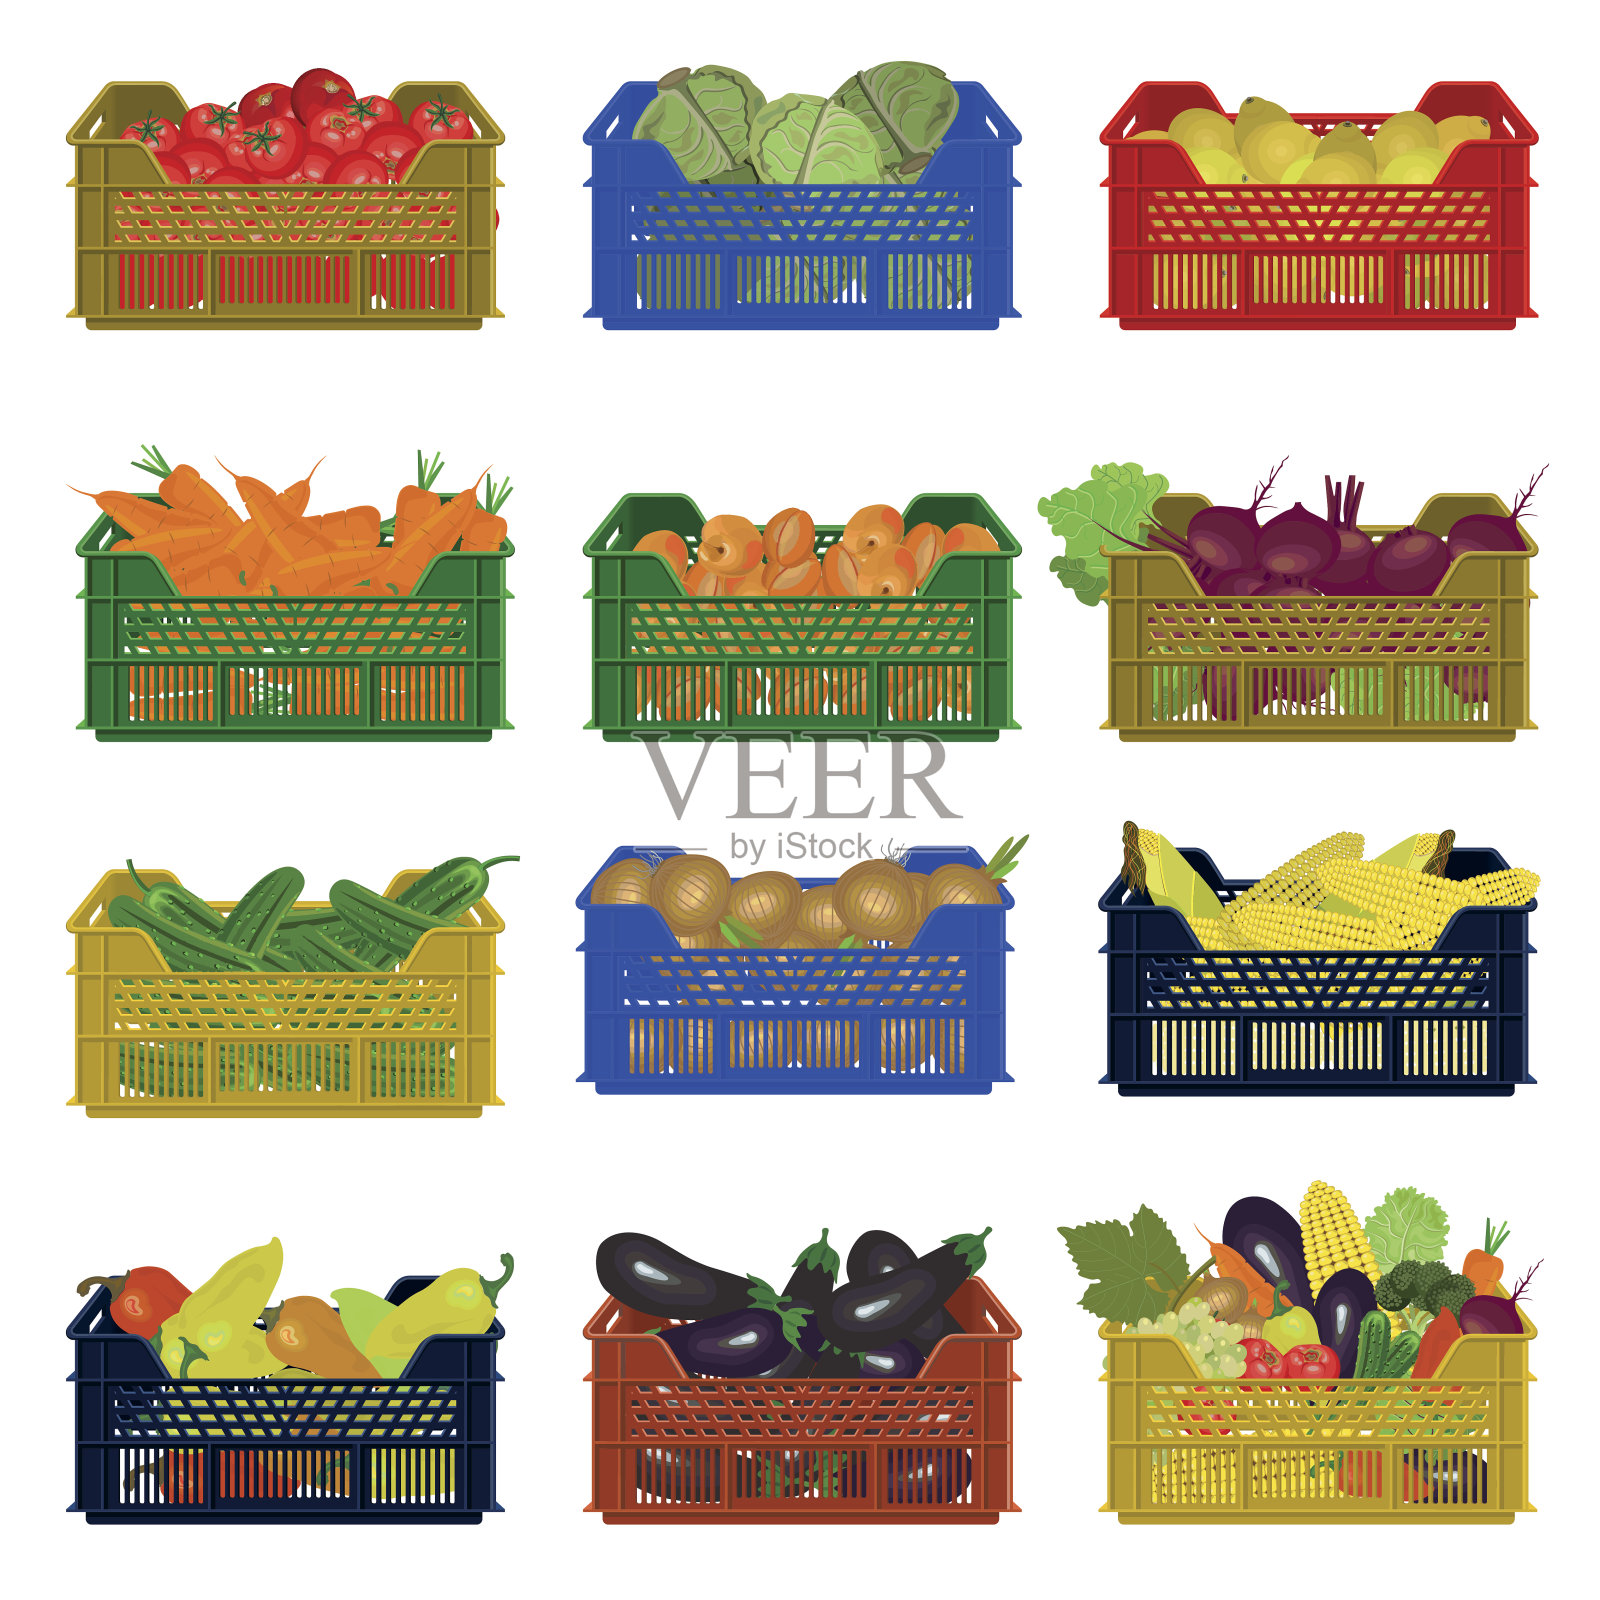 装蔬菜的塑料盒插画图片素材